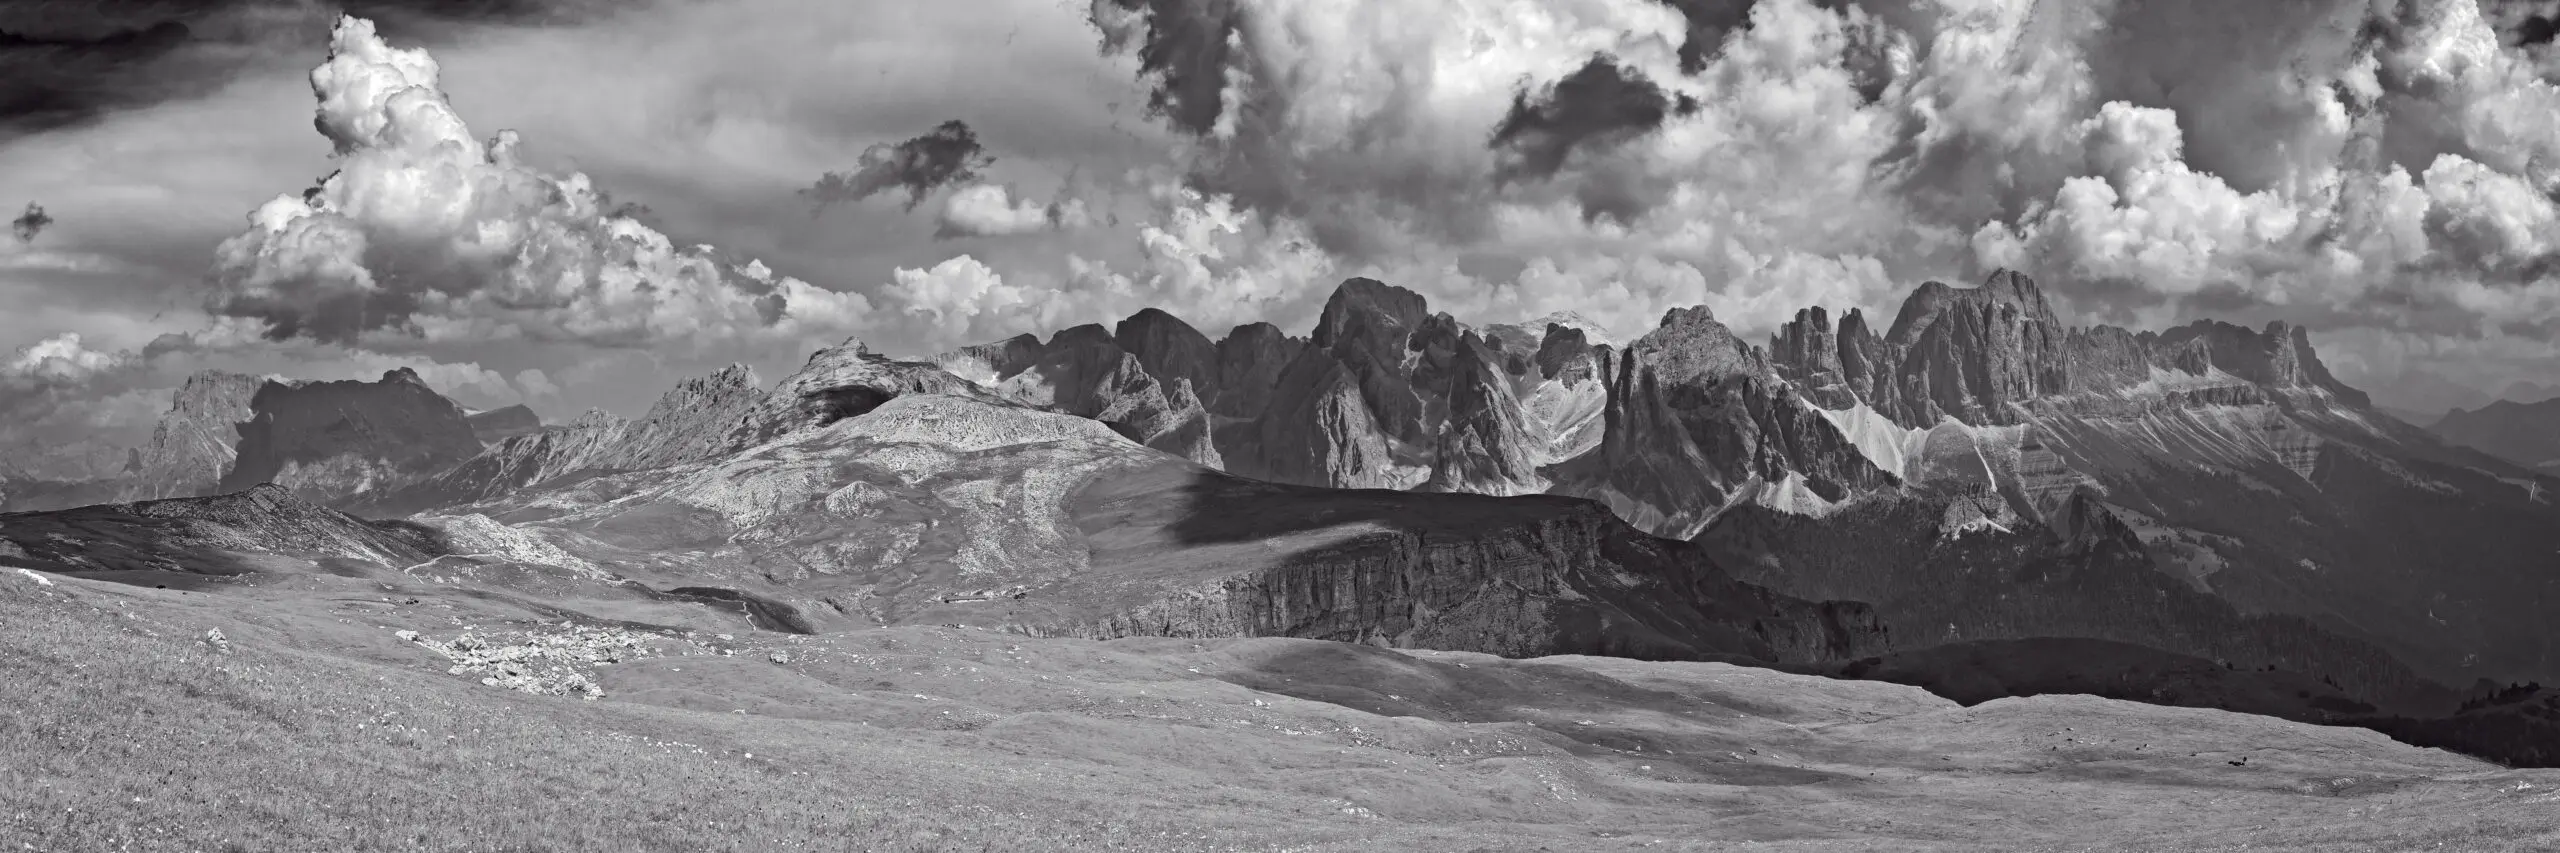 Wandbild (3237) Catinaccio präsentiert: Landschaften,Berge